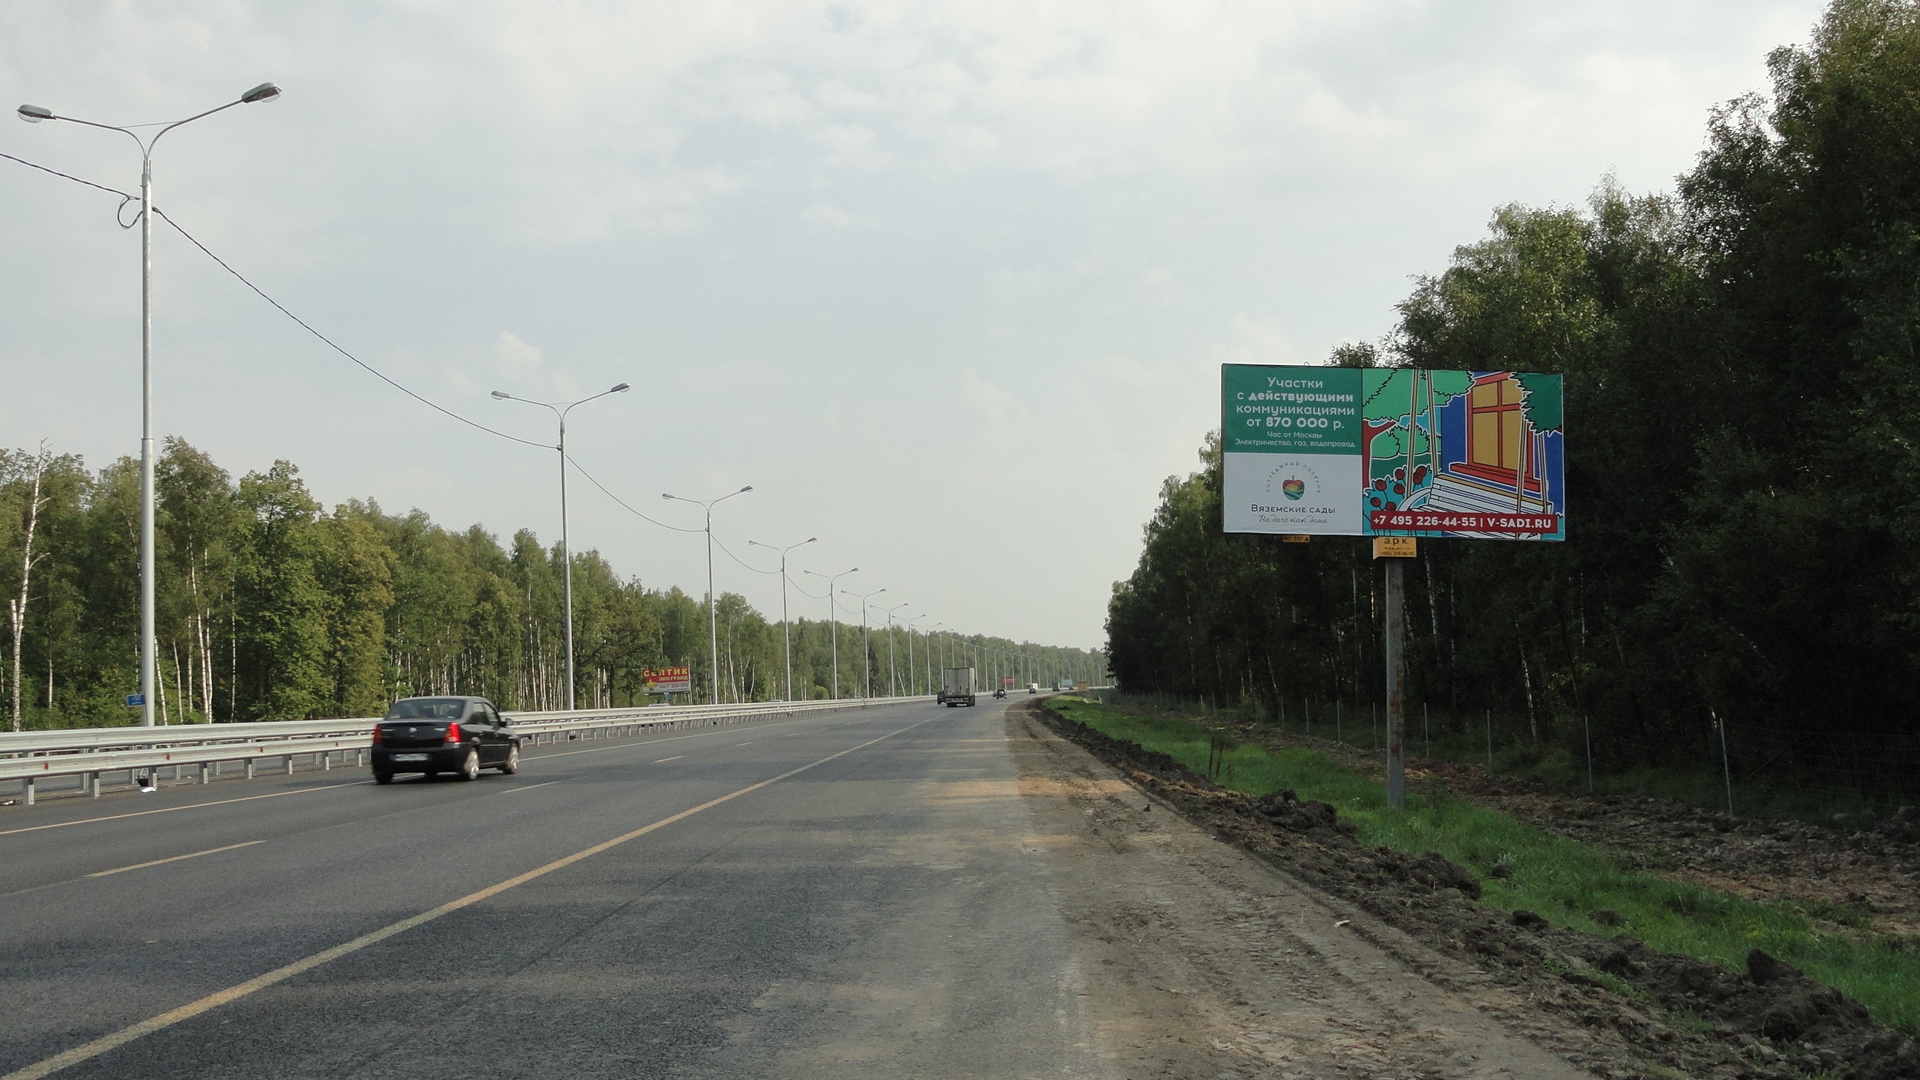 Симферопольское ш.,М-2 Крым 74,40 км, (53,50 км от МКАД), справа, г.Чехов